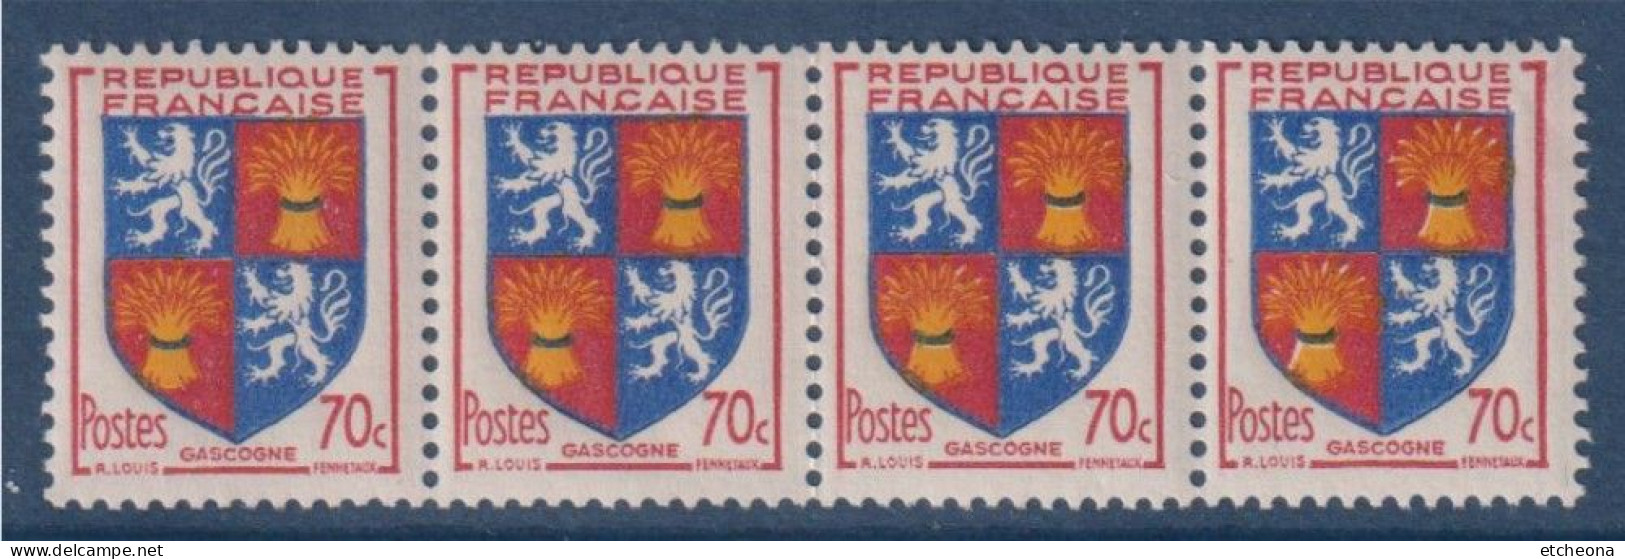 Gascogne Armoiries De Provinces VI N°958 Bande De 4 Timbres Neufs - 1941-66 Wapenschilden